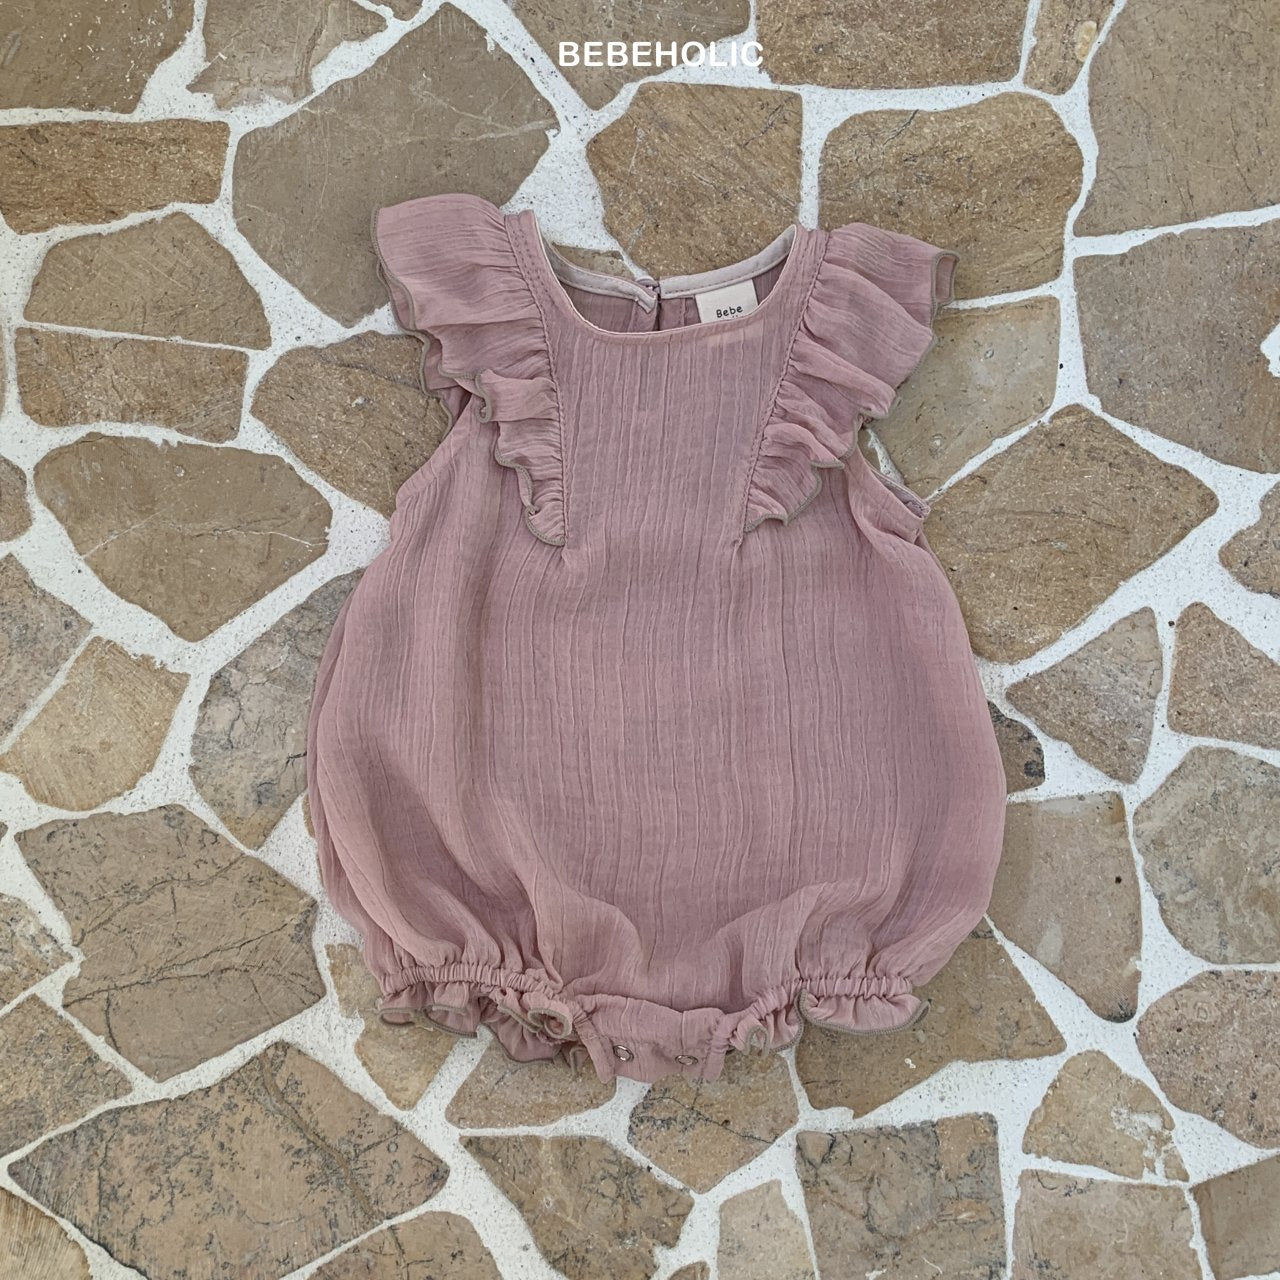 Ein rosa Lily Wing Bodysuit mit romantischen Rüschen und elastischen Beinausschnitten auf einer Pflastersteinoberfläche. Der Strampler ist aus strukturiertem Stoff und hat ein kleines Etikett mit der Marke „Bebe Holic“.